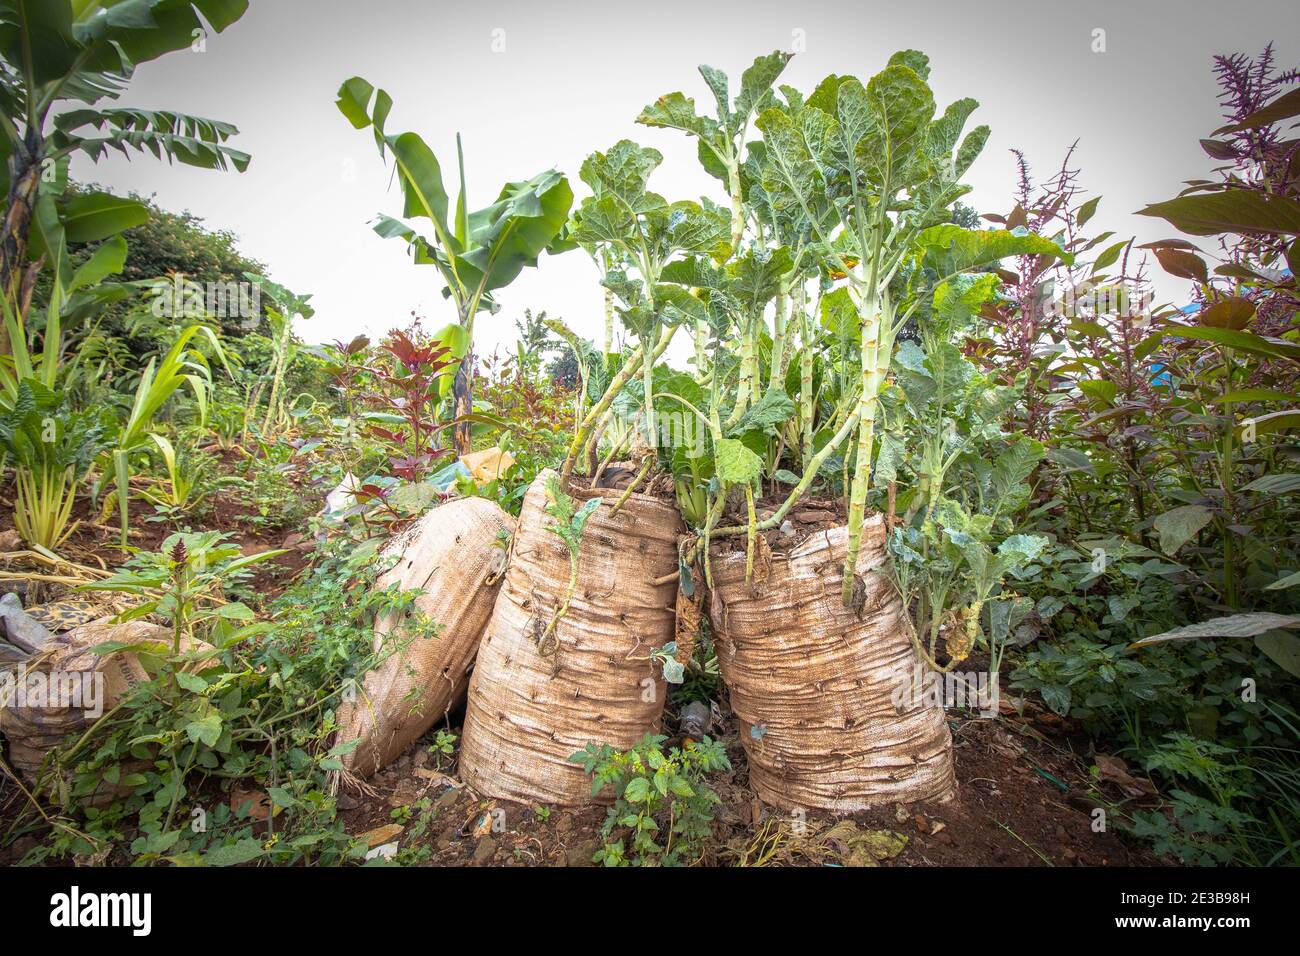 Les sacs en polypropylène sont utilisés par les petits agriculteurs locaux pour la culture de légumes dans les bidonvilles de Kibera.dans les plus grands et en développement lent des bidonvilles d'Afrique, bien connu pour sa croissance la plus élevée de population et la connexion dense et la proximité des structures autour des quartiers, tout le monde n'est pas en mesure de mettre en pratique et de prendre des mesures pour recycler les déchets et les produits en plastique. Après la démolition de maisons et d'entreprises, situé près de la ligne de chemin de fer par les chemins de fer du Kenya, la plupart des résidents pratiquent le recyclage des sacs en polypropylène pour construire leurs nouvelles maisons et de petites entreprises Banque D'Images